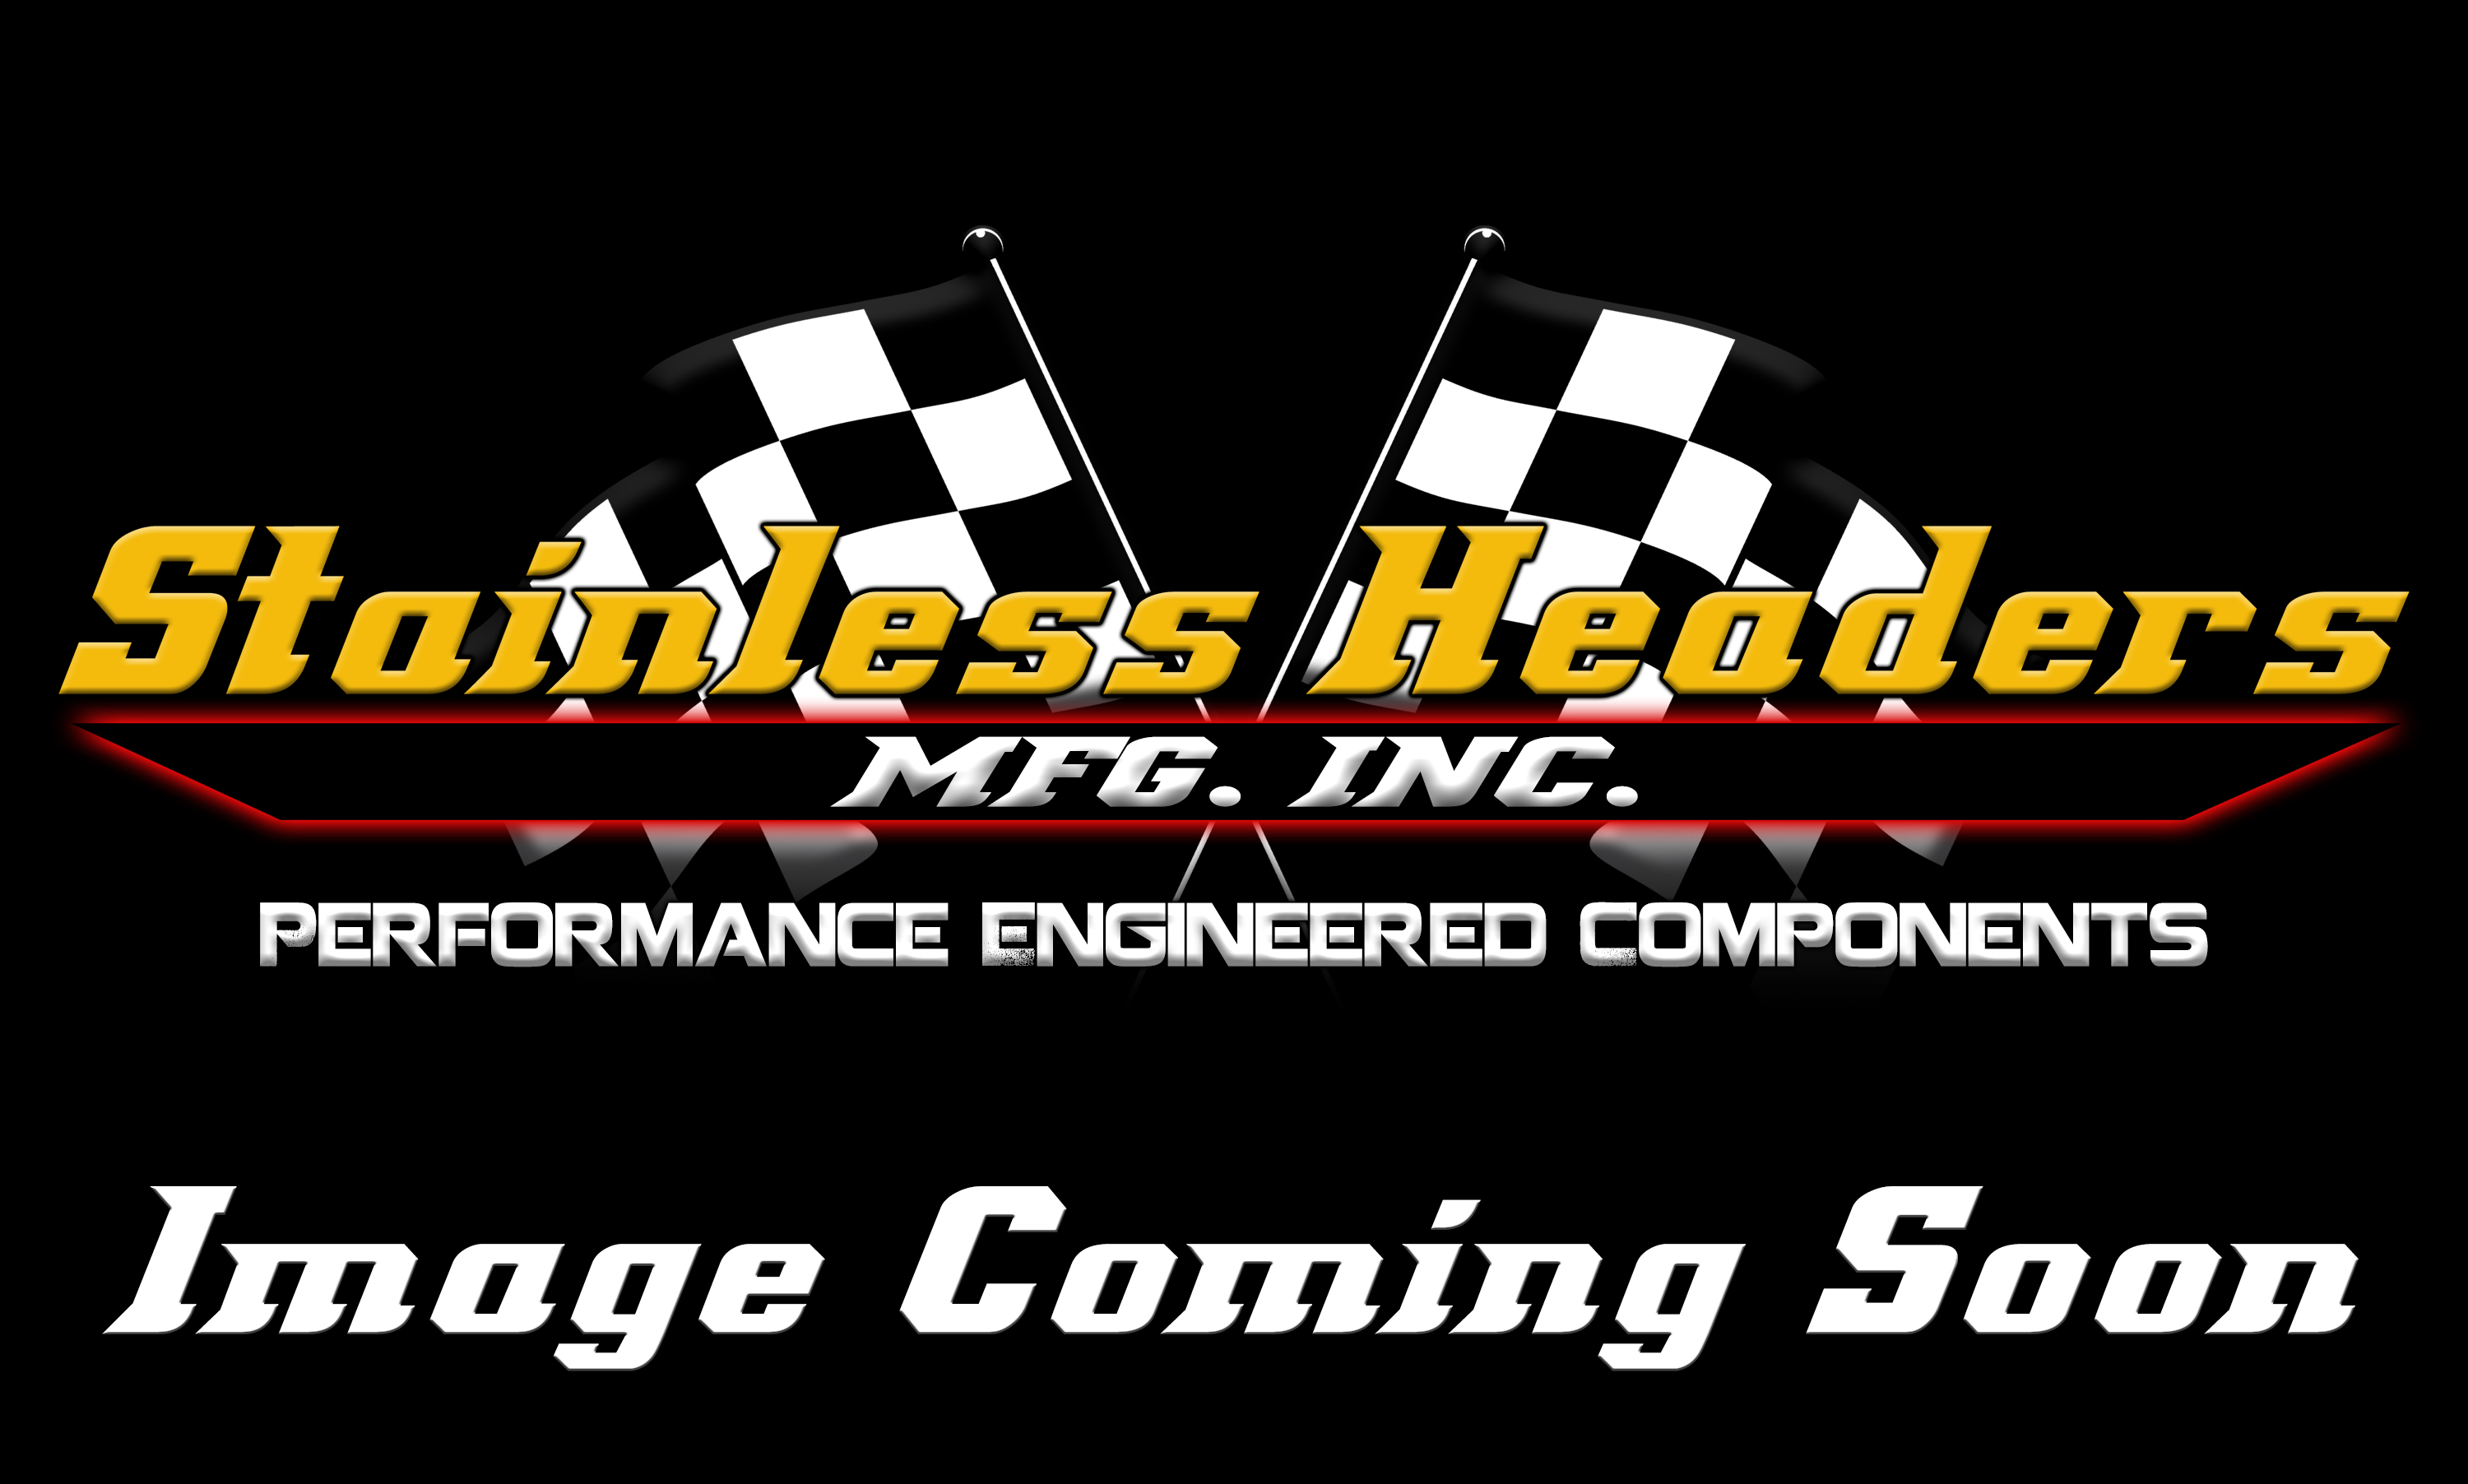 Stainless Headers - Chevy LSX/LS7 Mild Steel Header Flange